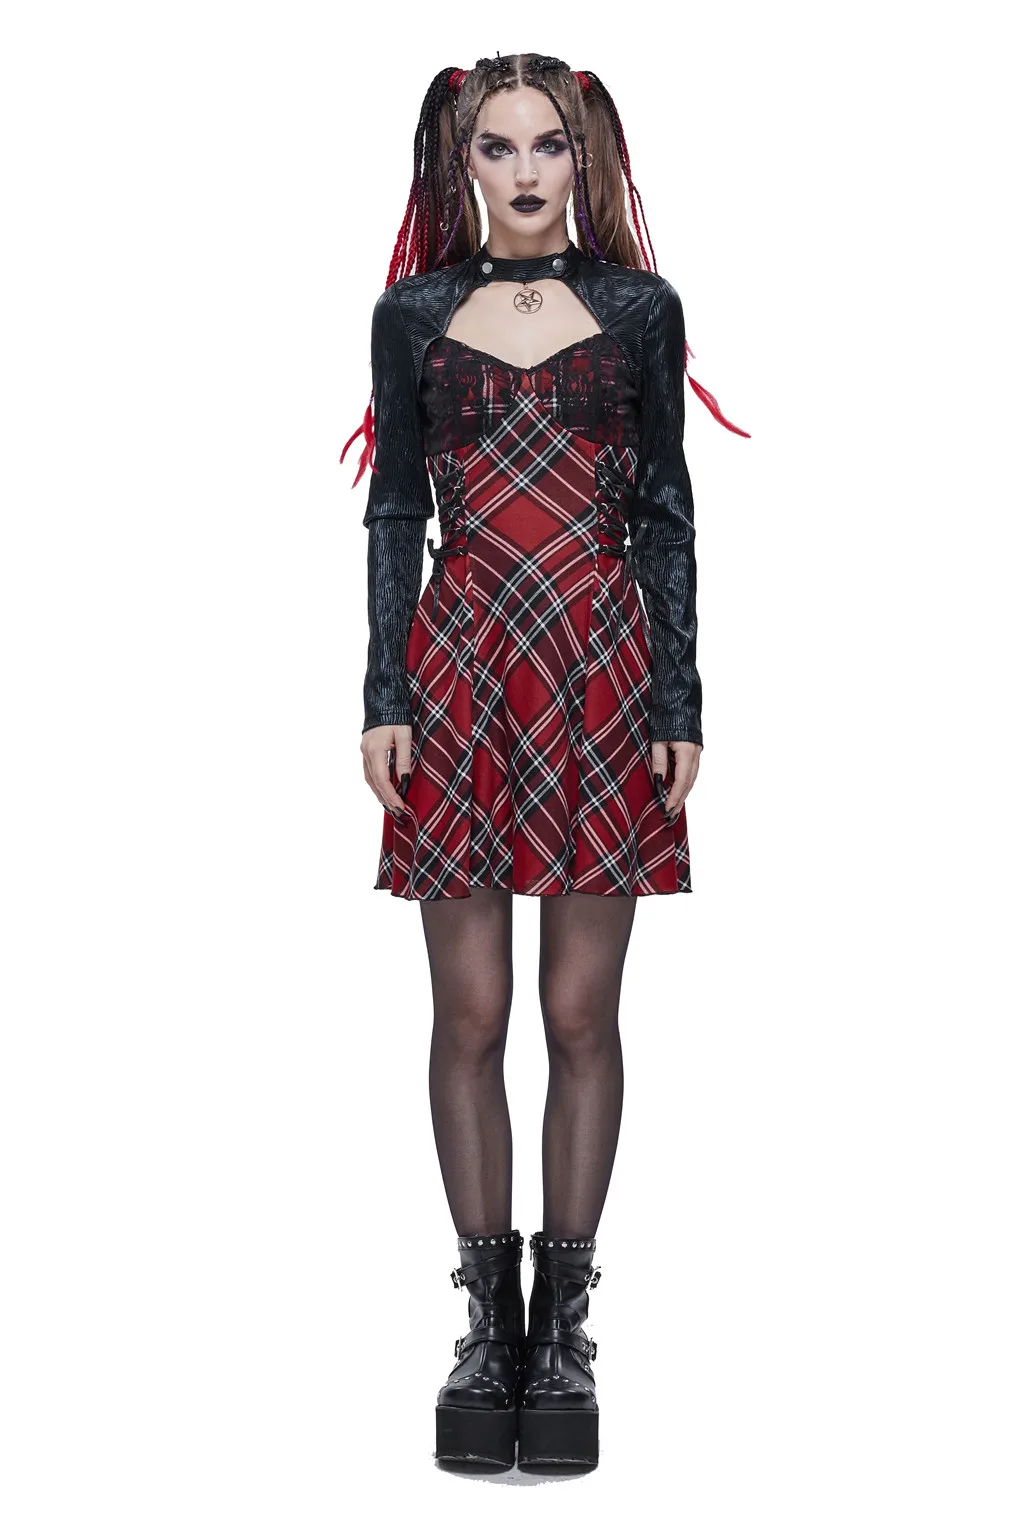 Halloween Gothic Dress Skirt V-Neck Dress Black Red Cool Sweet Dress